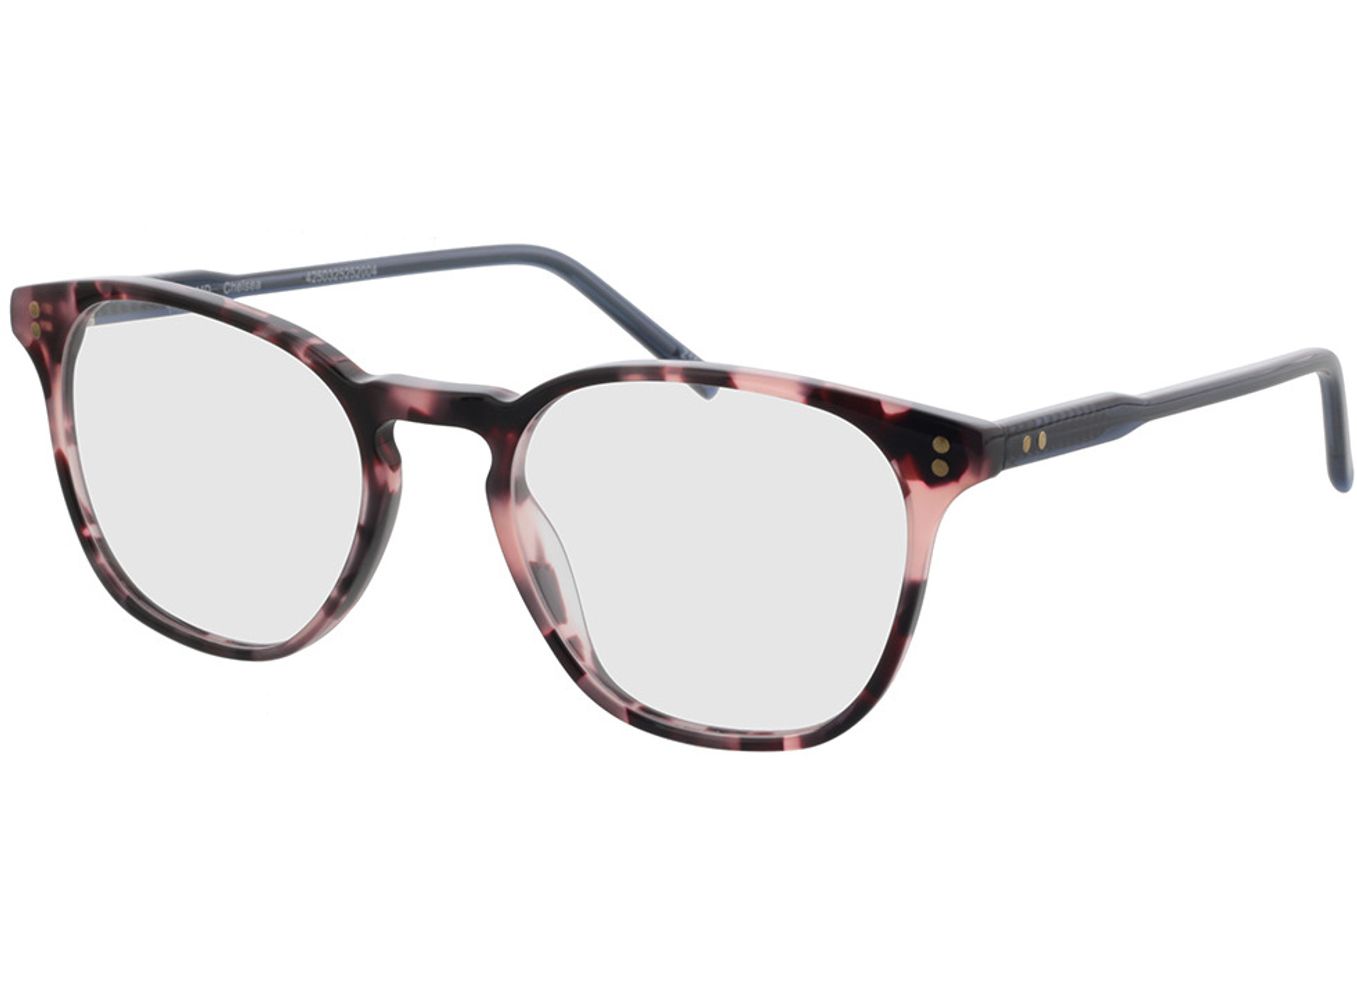 Chelsea - pink meliert Arbeitsplatzbrille, Vollrand, Eckig von Brille24 Collection